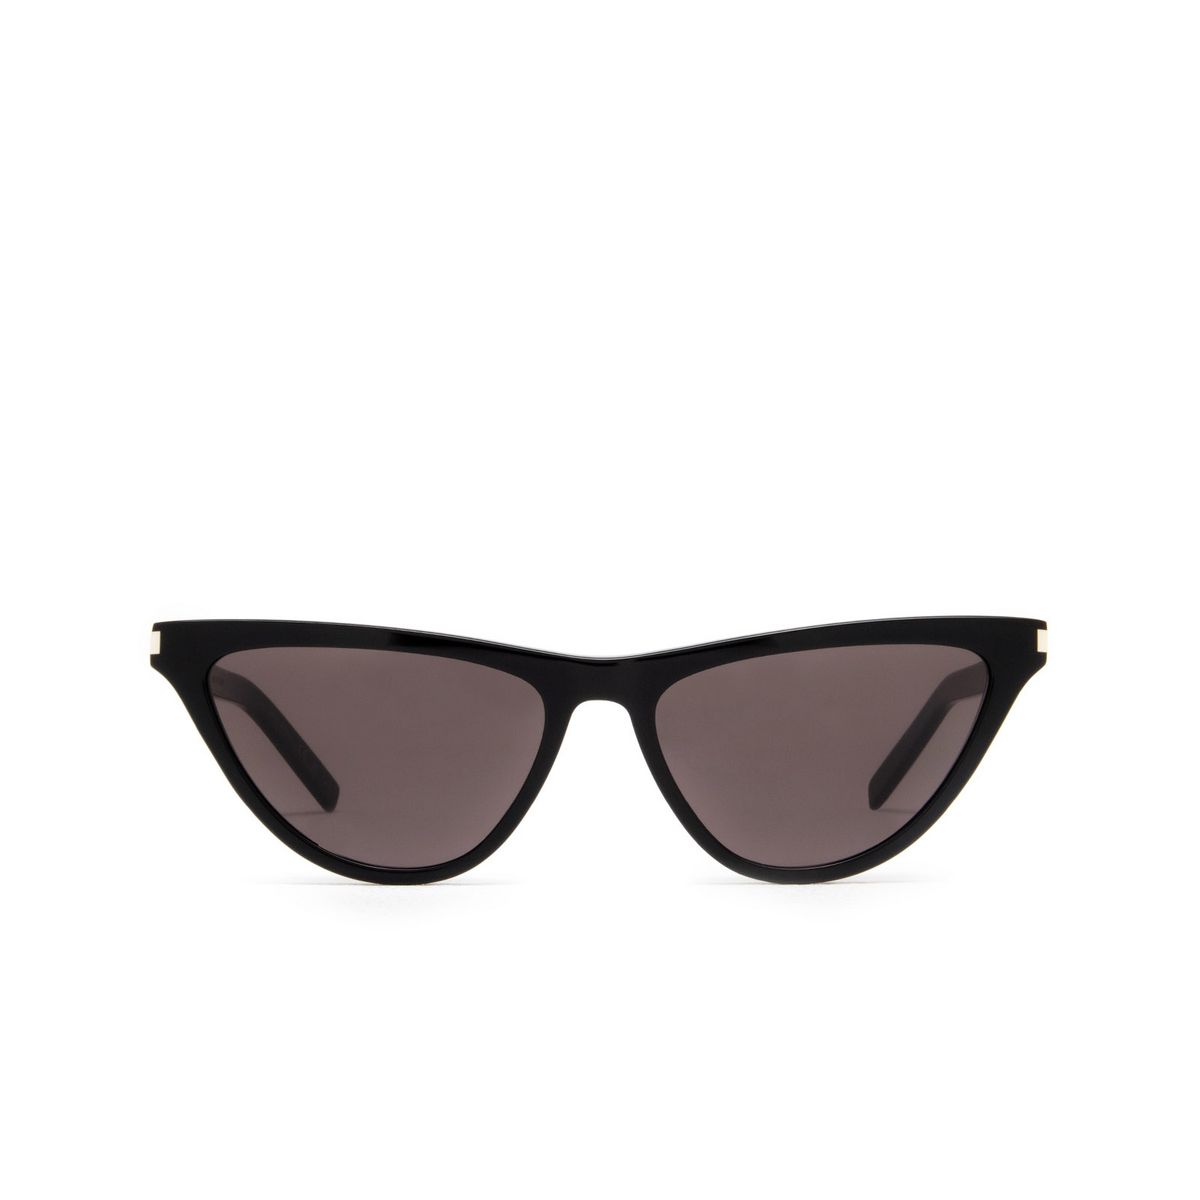 Saint Laurent SL 550 SLIM Sunglasses 001 Black - front view